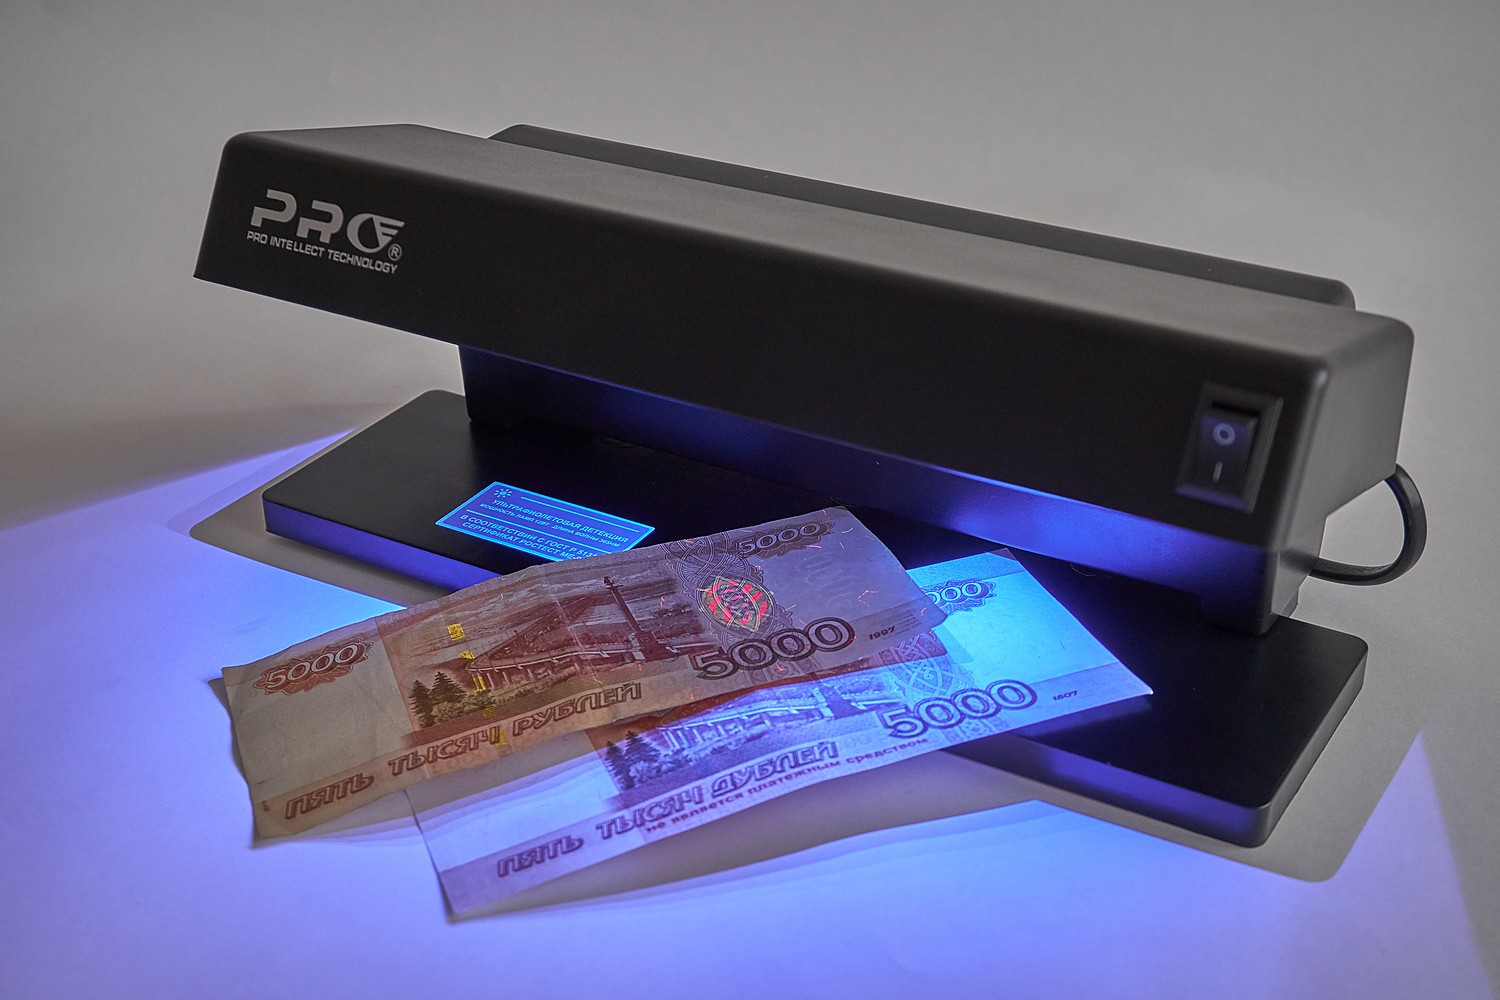 Сканер на оригинальность. Детектор банкнот Pro 12lpm. Детектор банкнот Pro 12 led т-06349. Pro детектор банкнот Pro 4 led. "Детектор валют ir-1750".